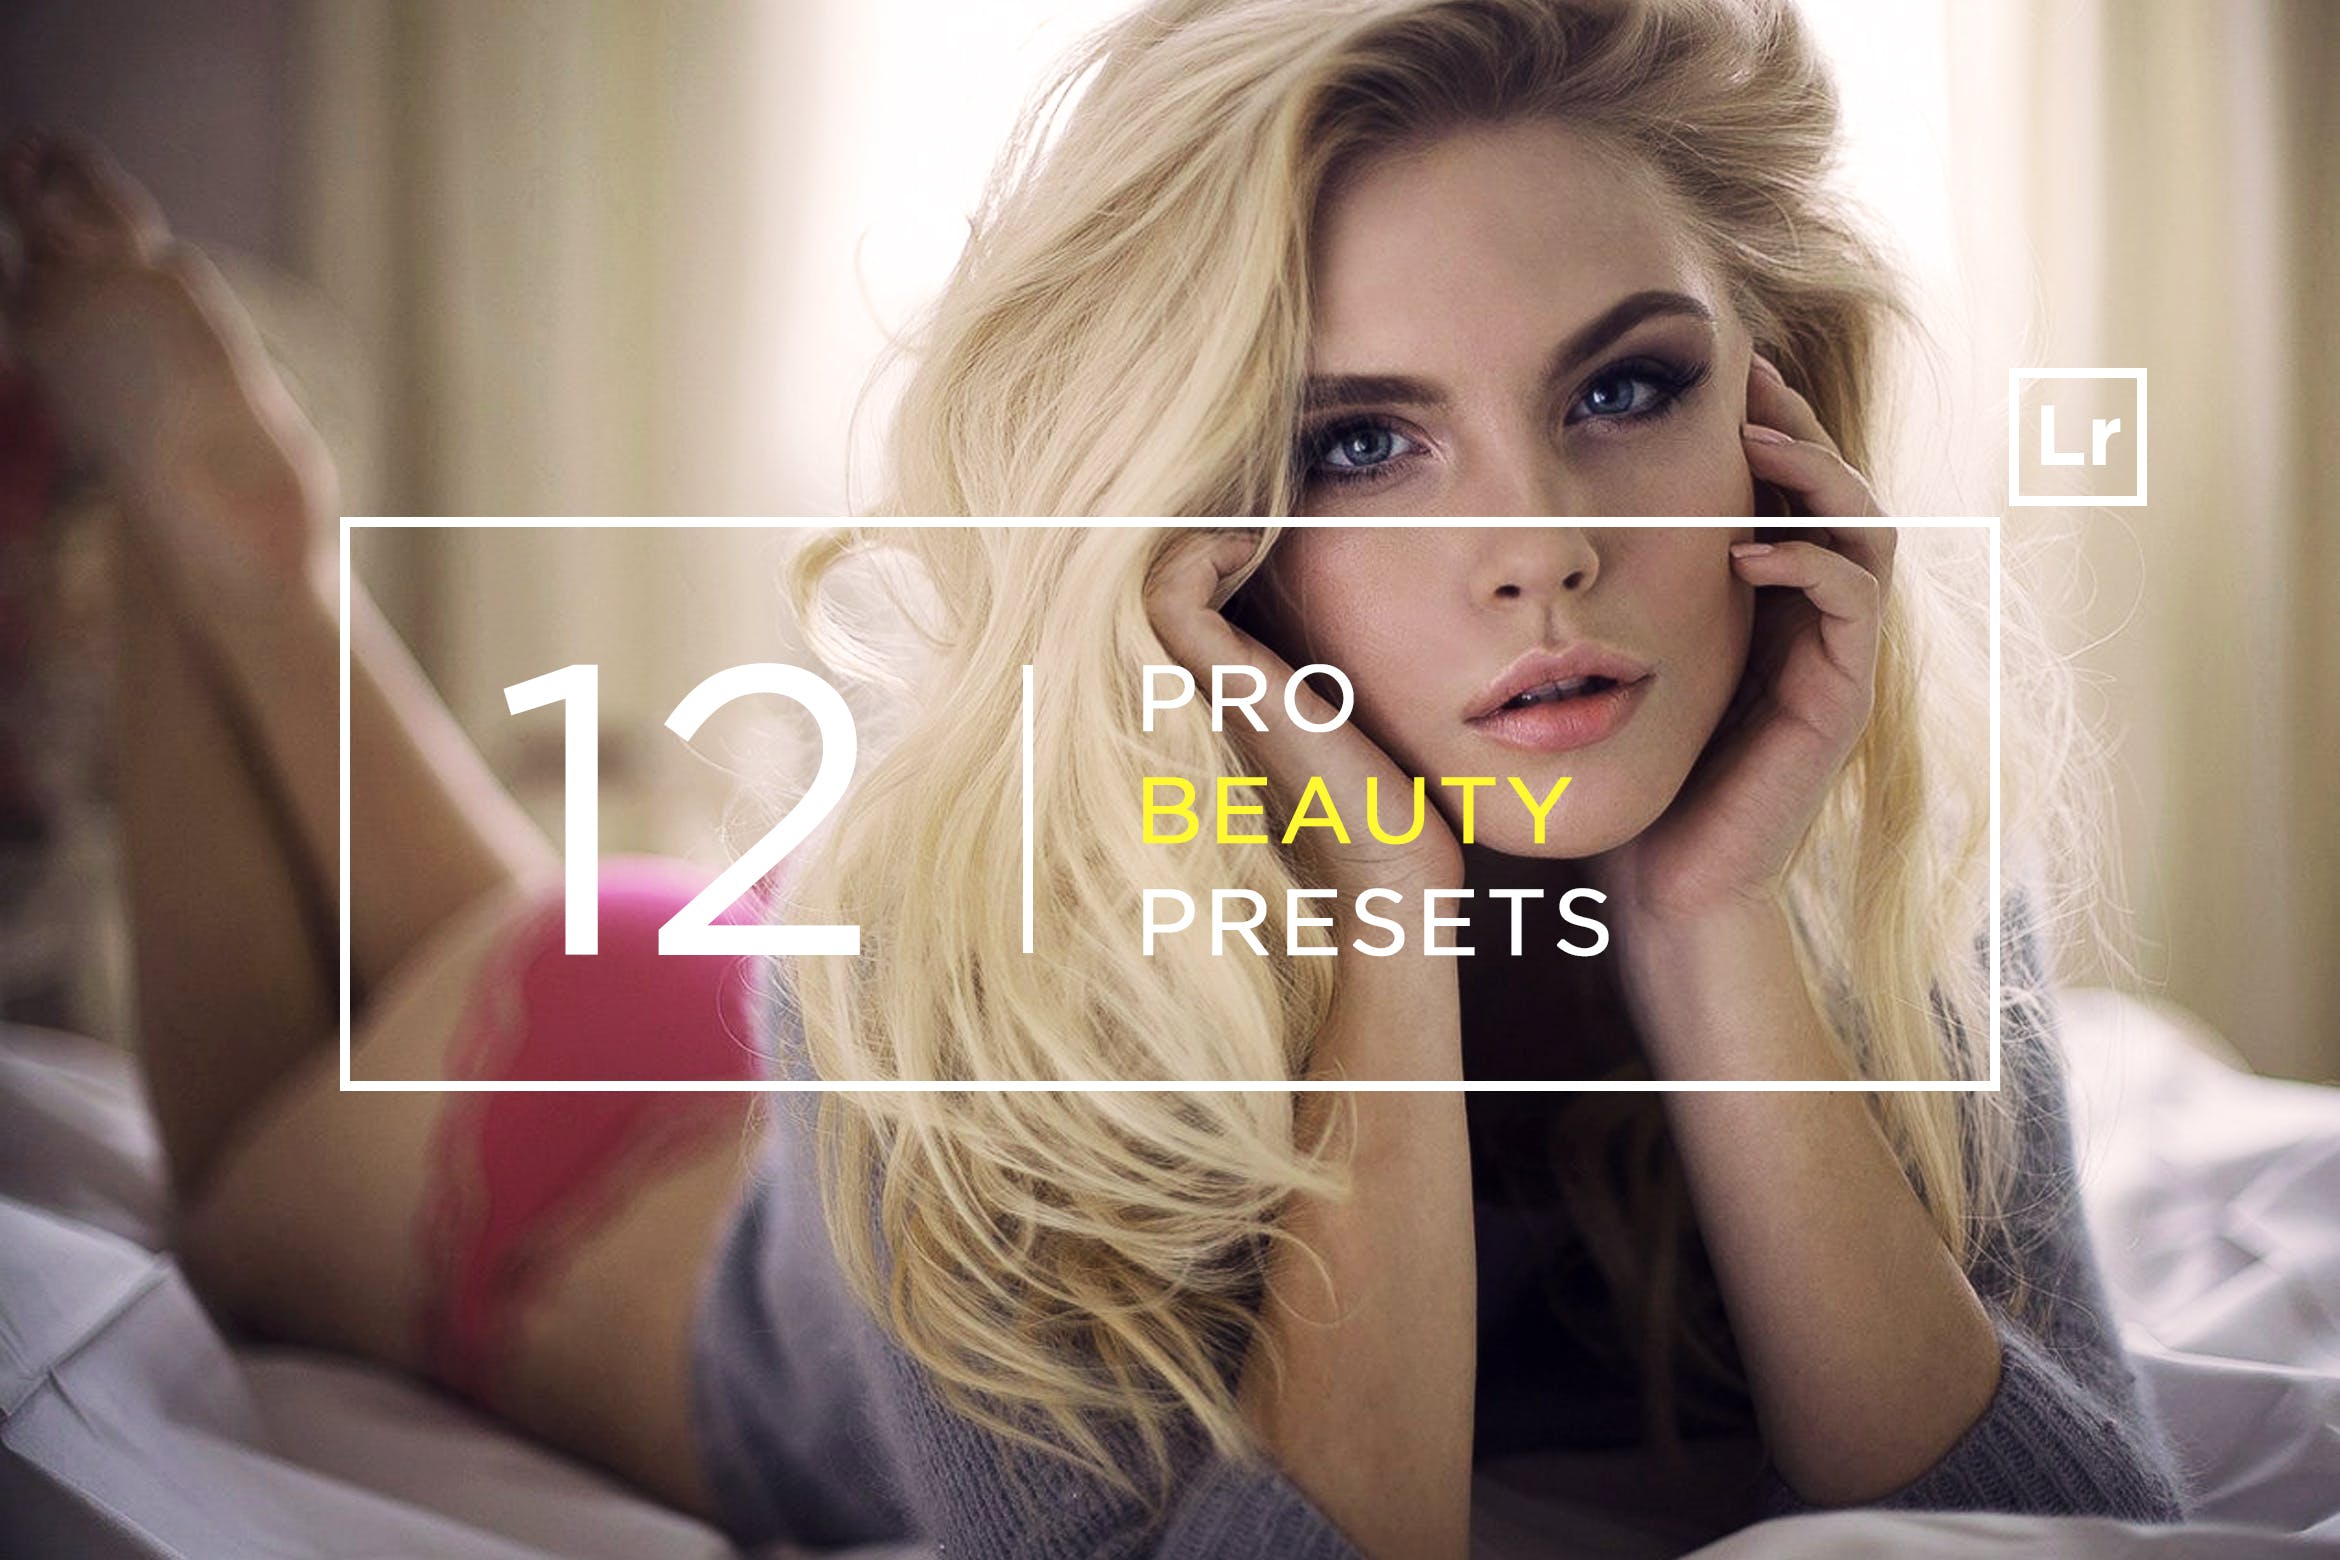 12款超级美颜调色滤镜素材库精选LR预设 12 Pro Beauty Lightroom Presets插图